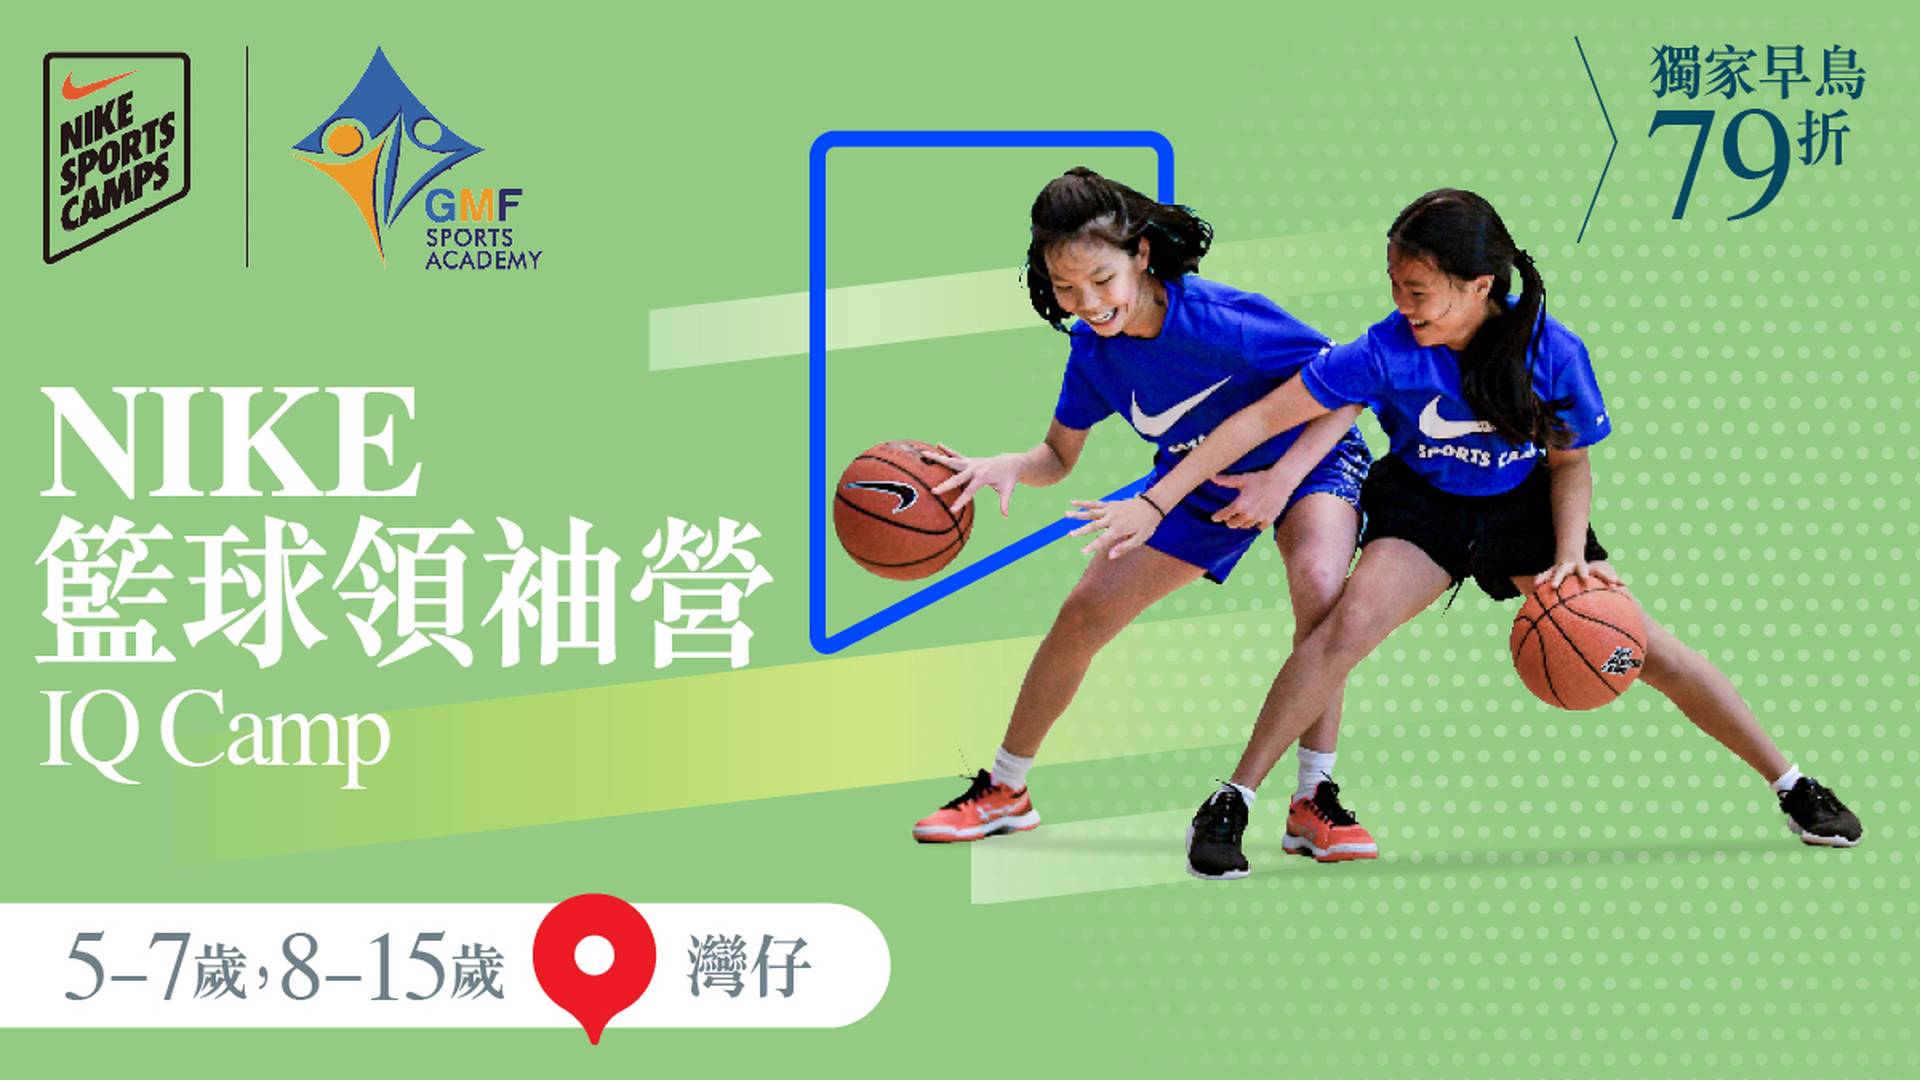 Nike Basketball IQ Camp NIKE 籃球領袖營 2023 (5 - 7歲 及 8 - 15歲) (灣仔)